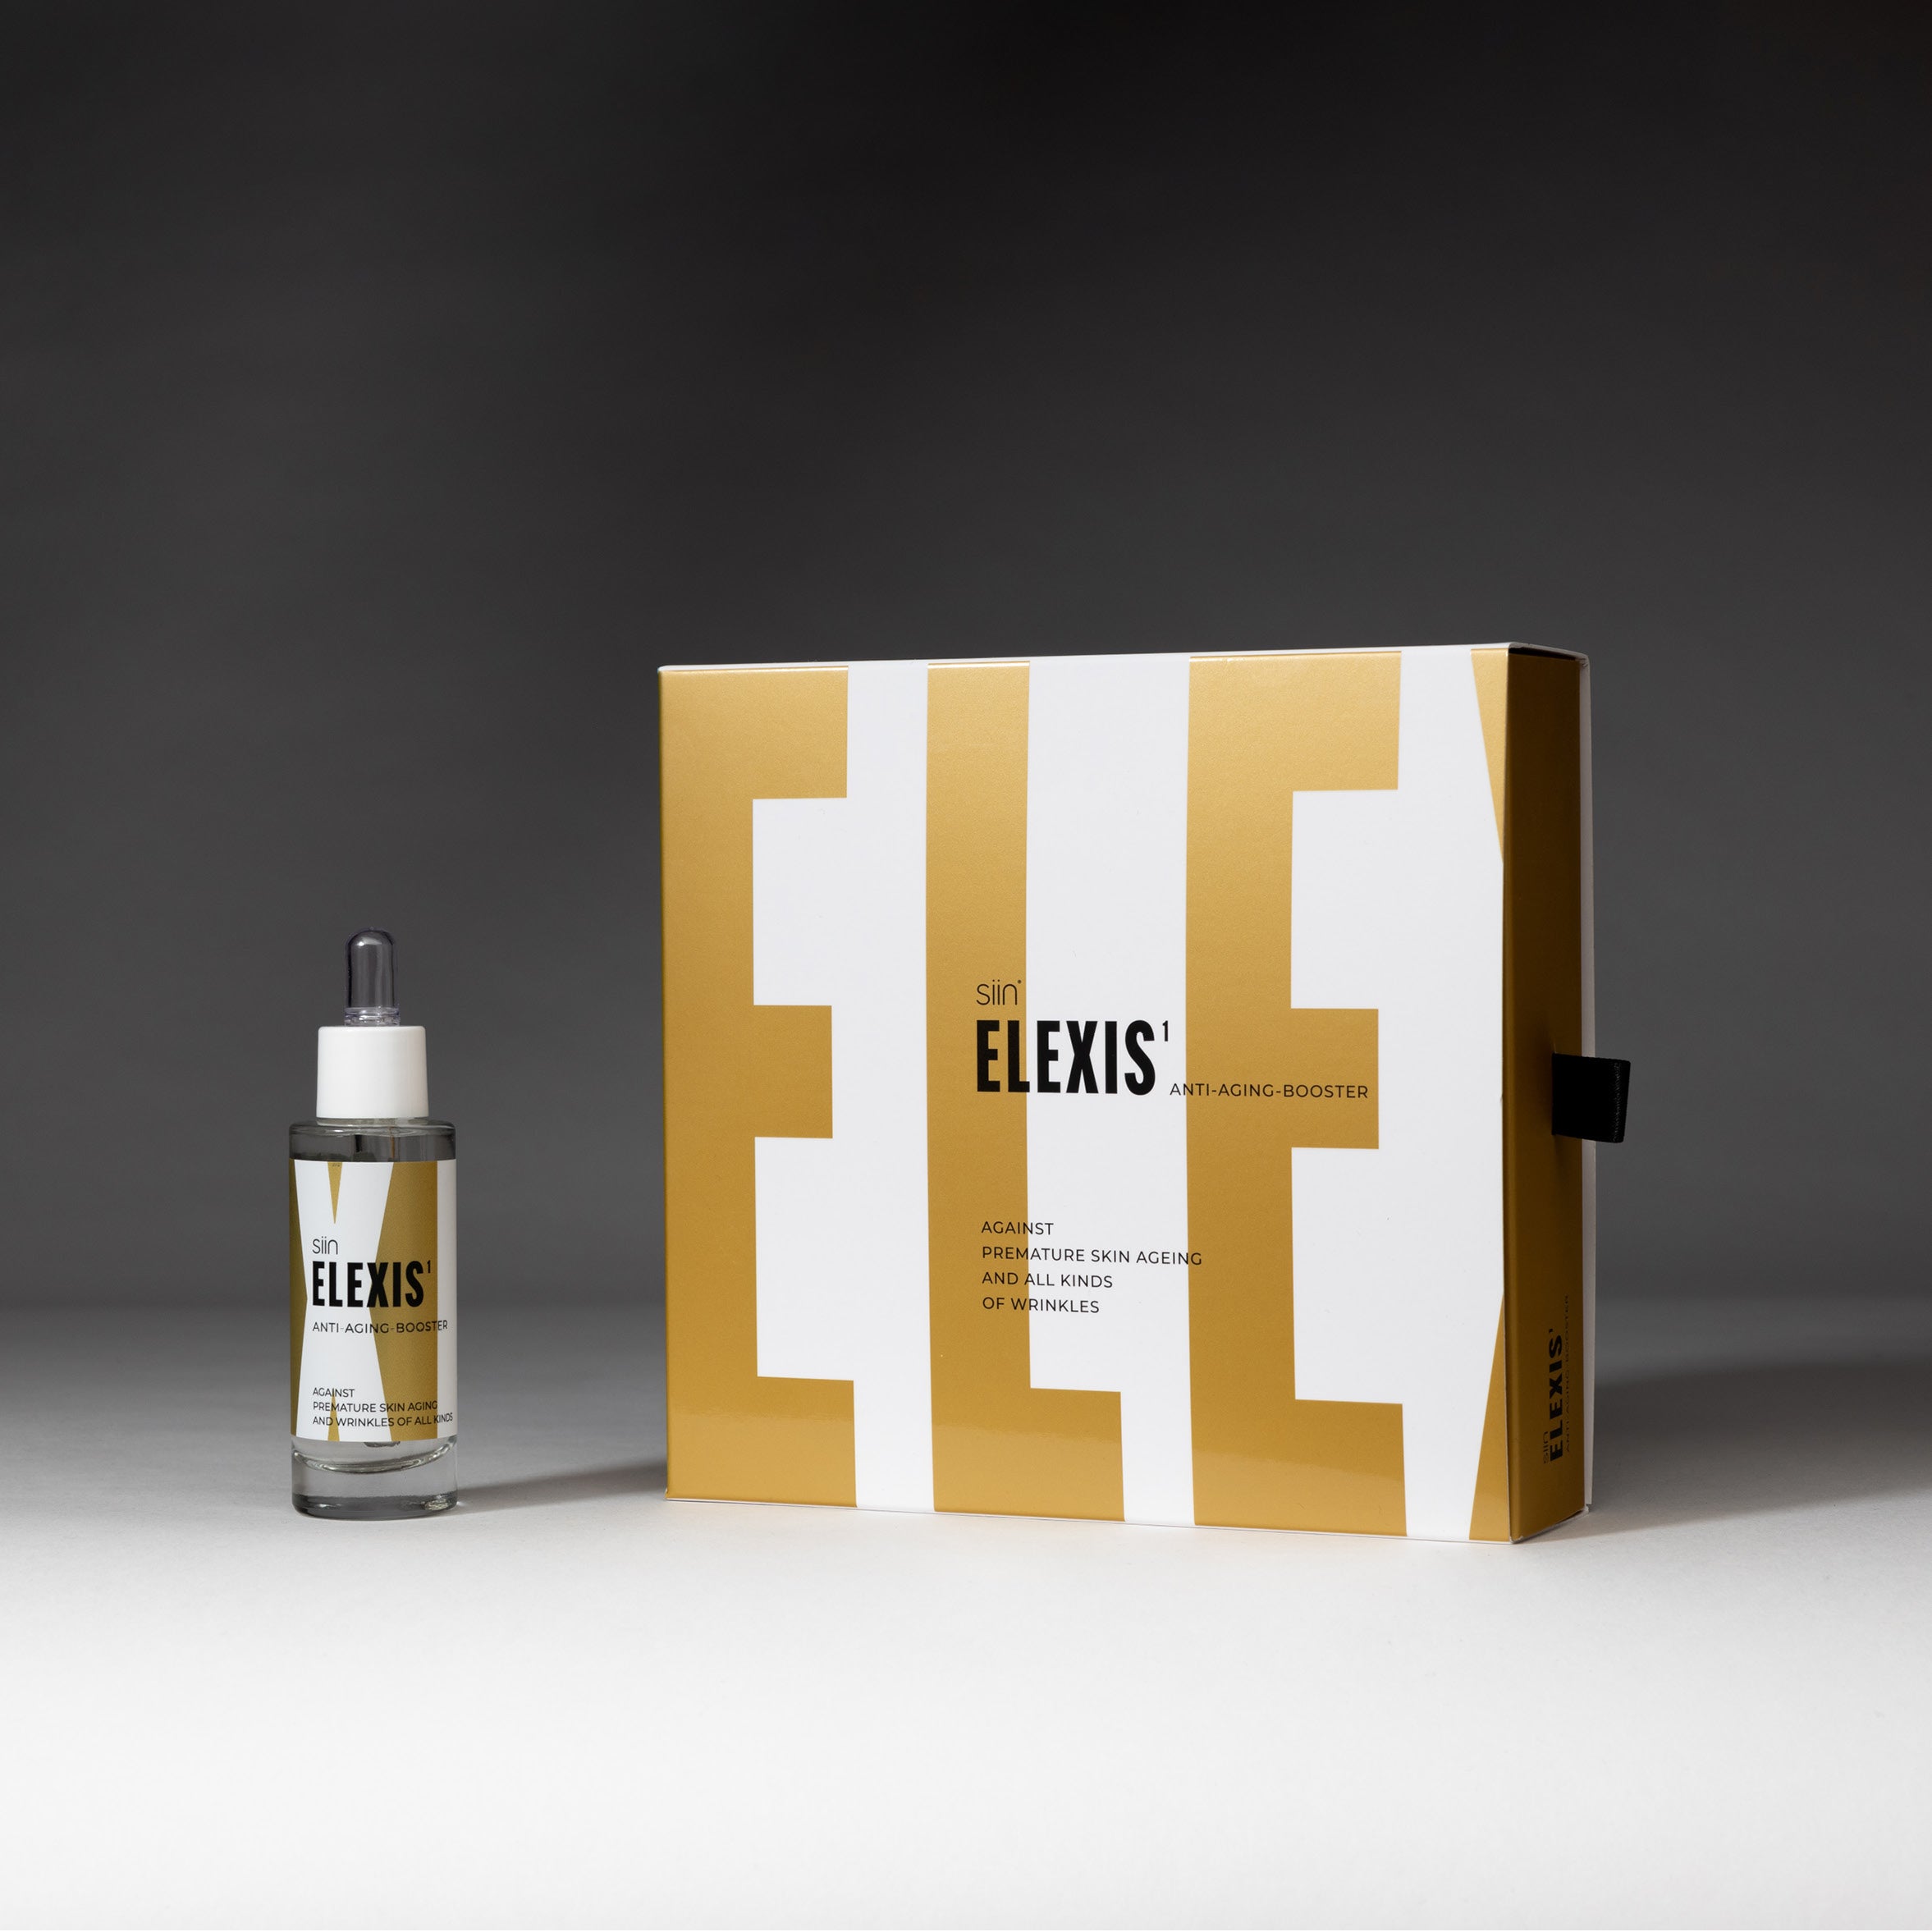 ELEXIS 1. High Intense Anti Aging Booster. Gegen alle Arten von Falten, 30 ml